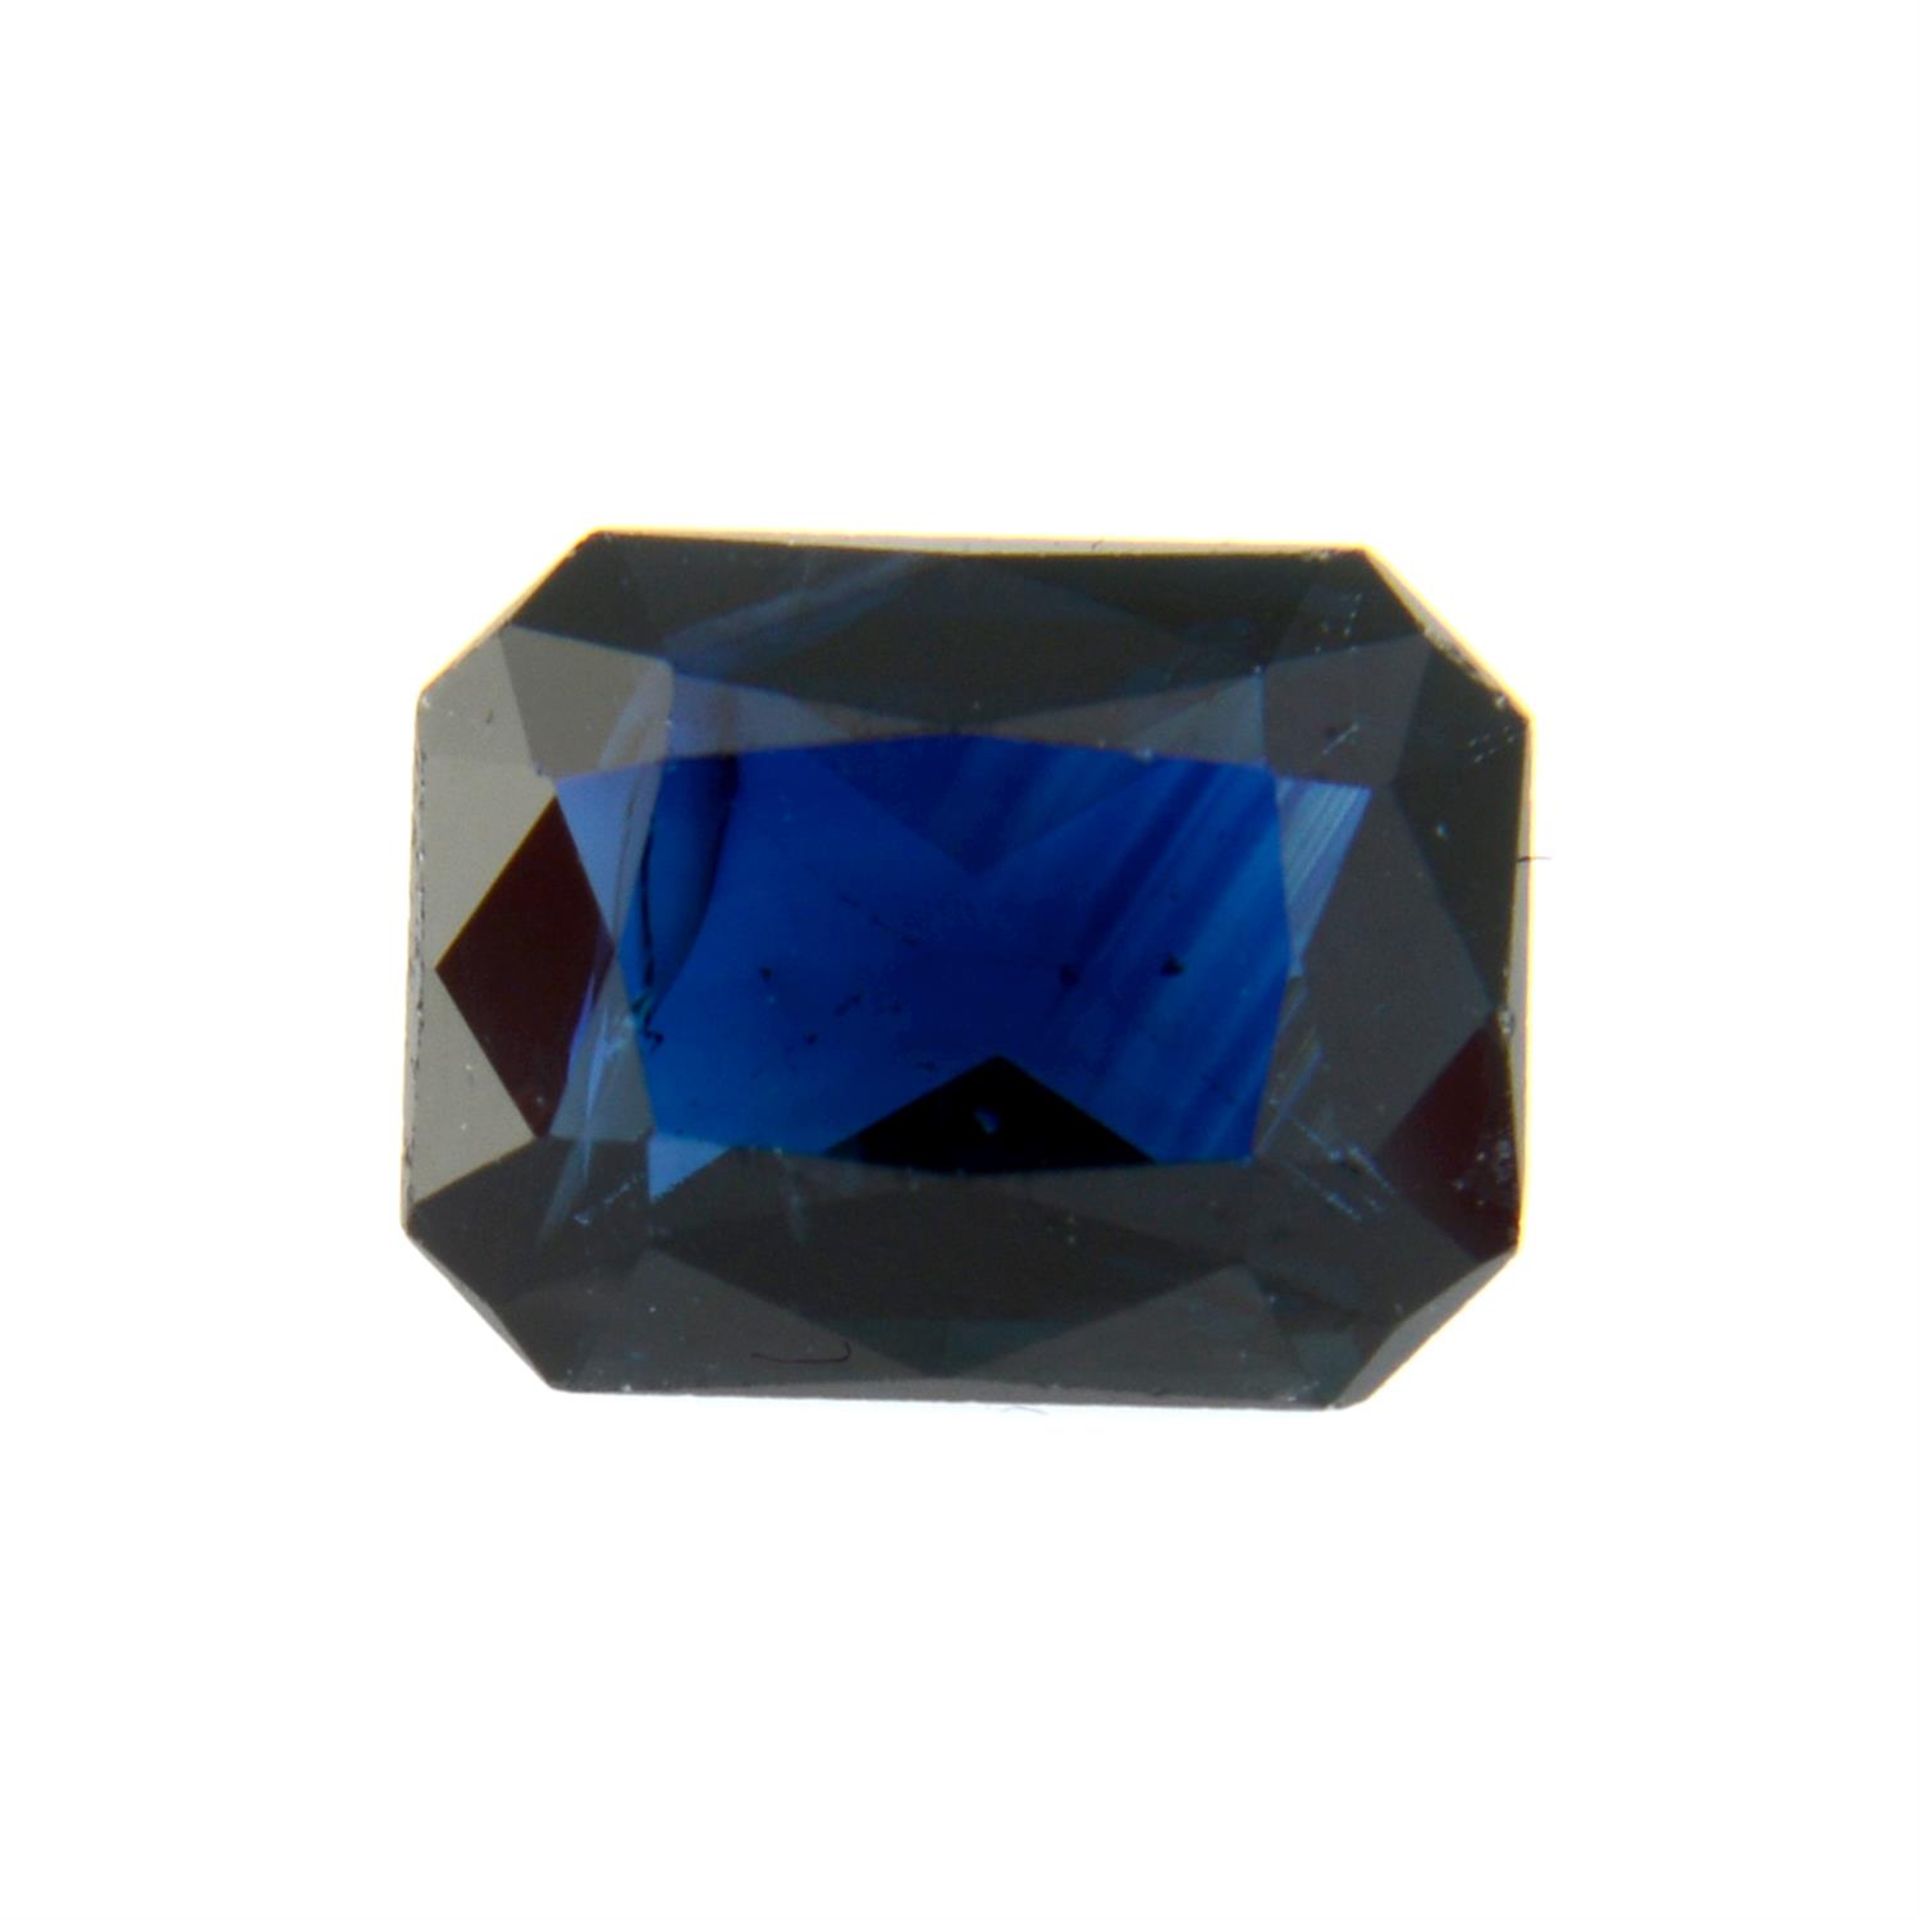 A rectangular shape sapphire, weighing 2ct